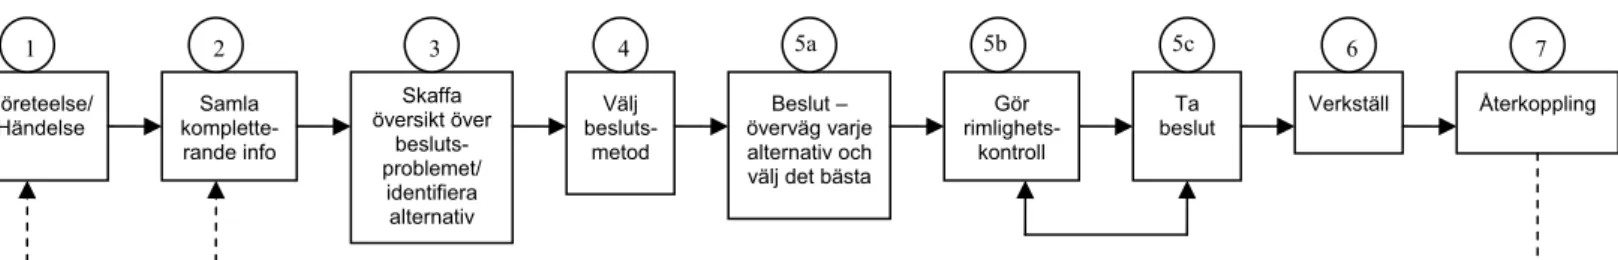 Figur 3.3. Modell av beslutsprocessen som använts i analysen.  